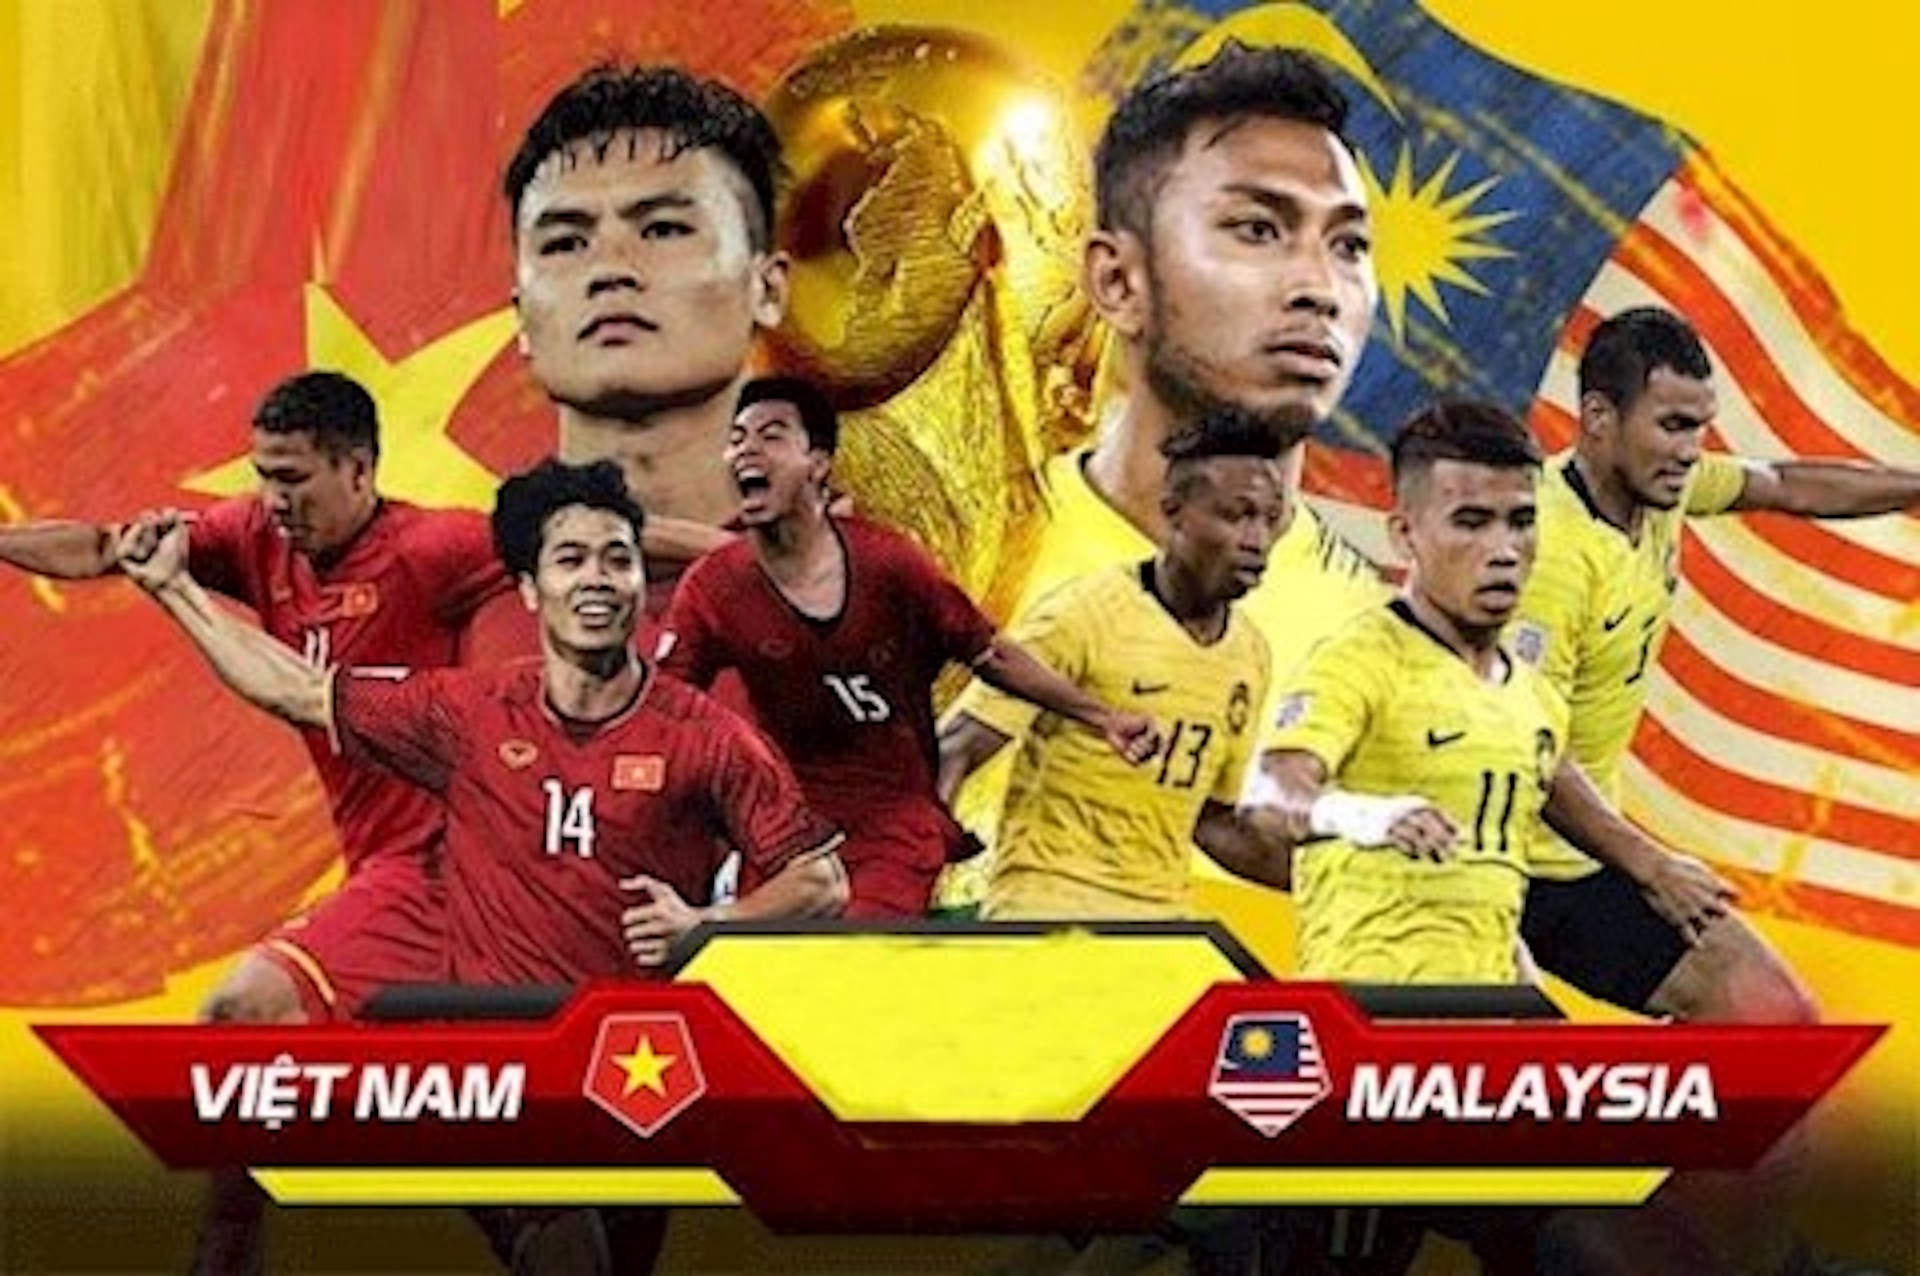 Khi hai đội tuyển bóng đá hàng đầu khu vực Đông Nam Á - Việt Nam và Malaysia đối đầu, ai sẽ giành chiến thắng? Hãy cùng đón xem trận đấu hấp dẫn này và là chứng kiến cuộc chiến trên sân cỏ giữa hai đội tuyển đầy tài năng.